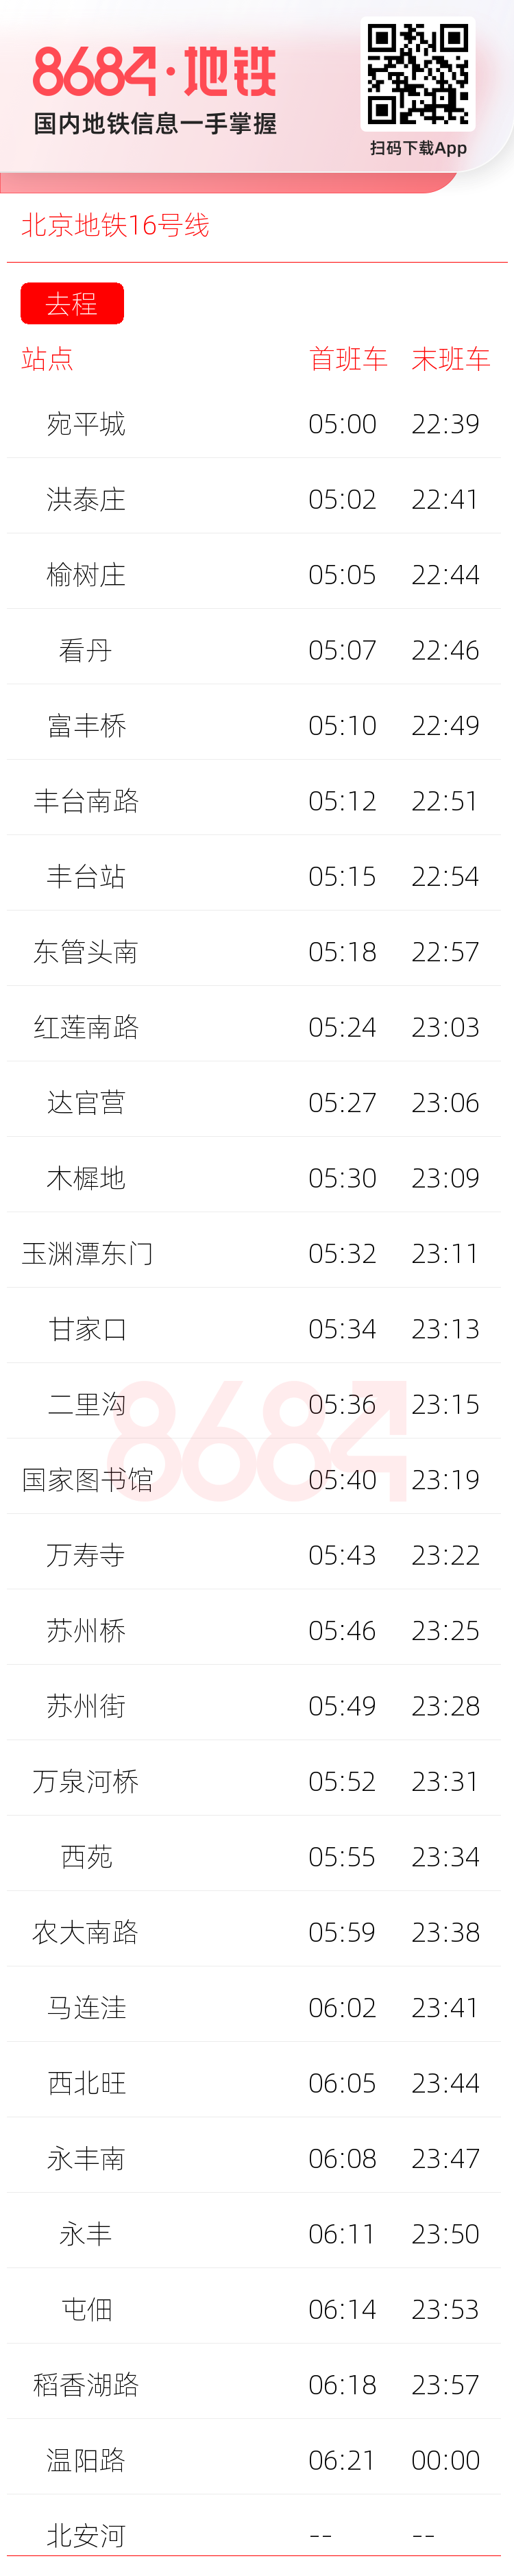 北京地铁16号线运营时间表